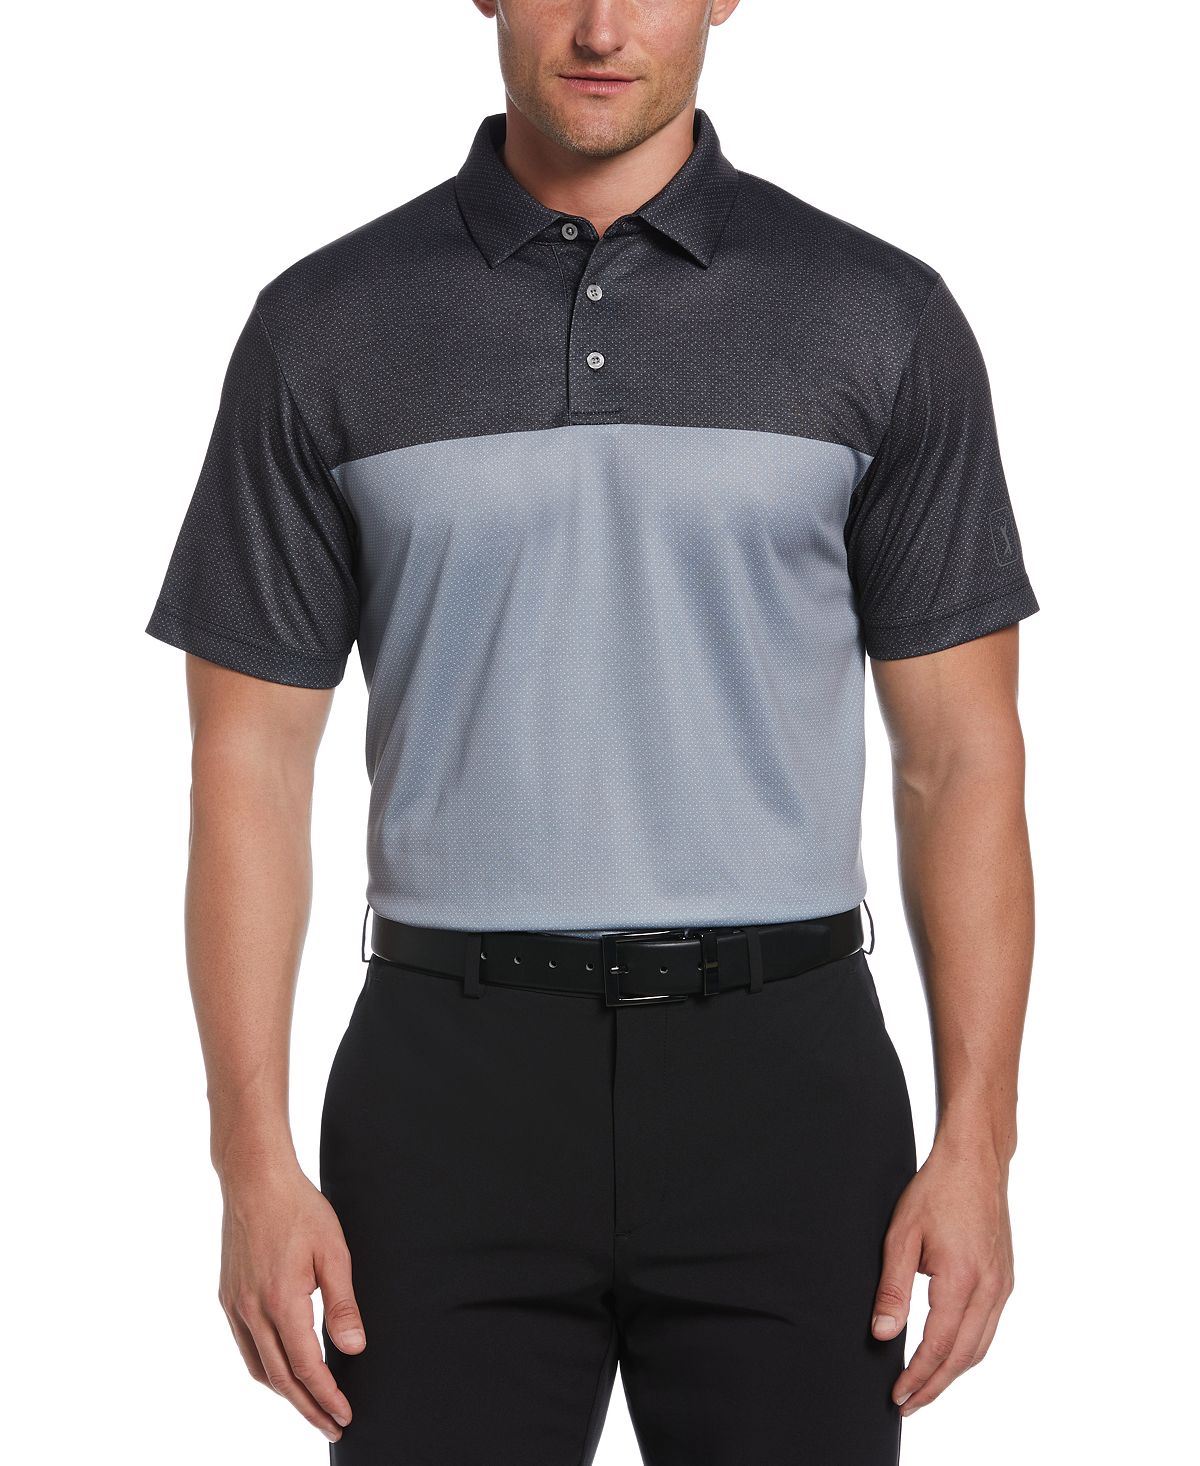 Мужская рубашка поло для гольфа airflux birdseye с блочным принтом и короткими рукавами спортивного кроя PGA TOUR